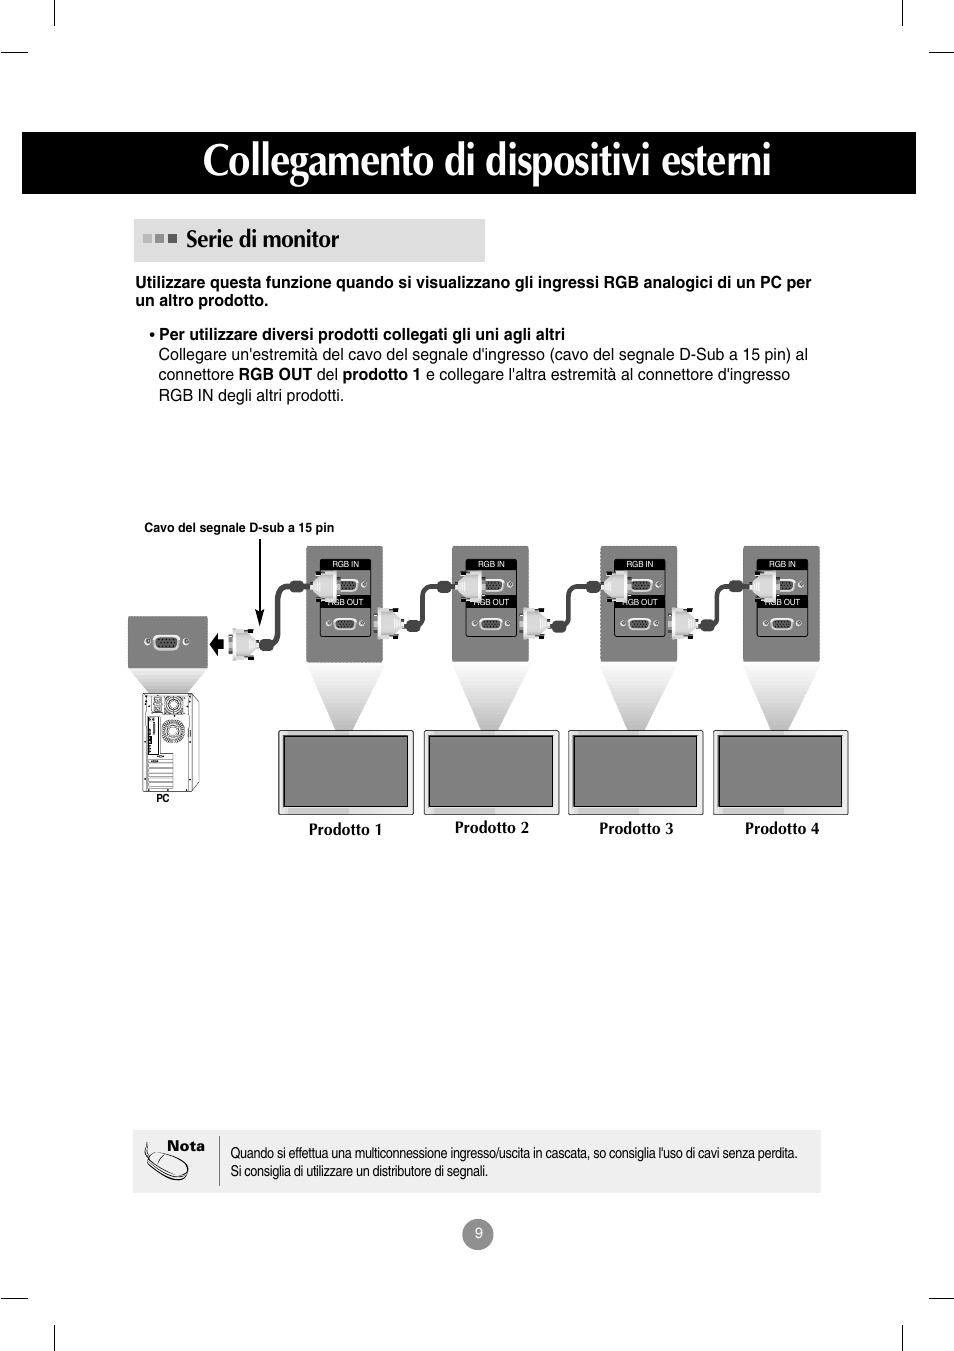 Serie di monitor, Collegamento di dispositivi esterni | LG M4212C-BAP Manuale d'uso | Pagina 10 / 67